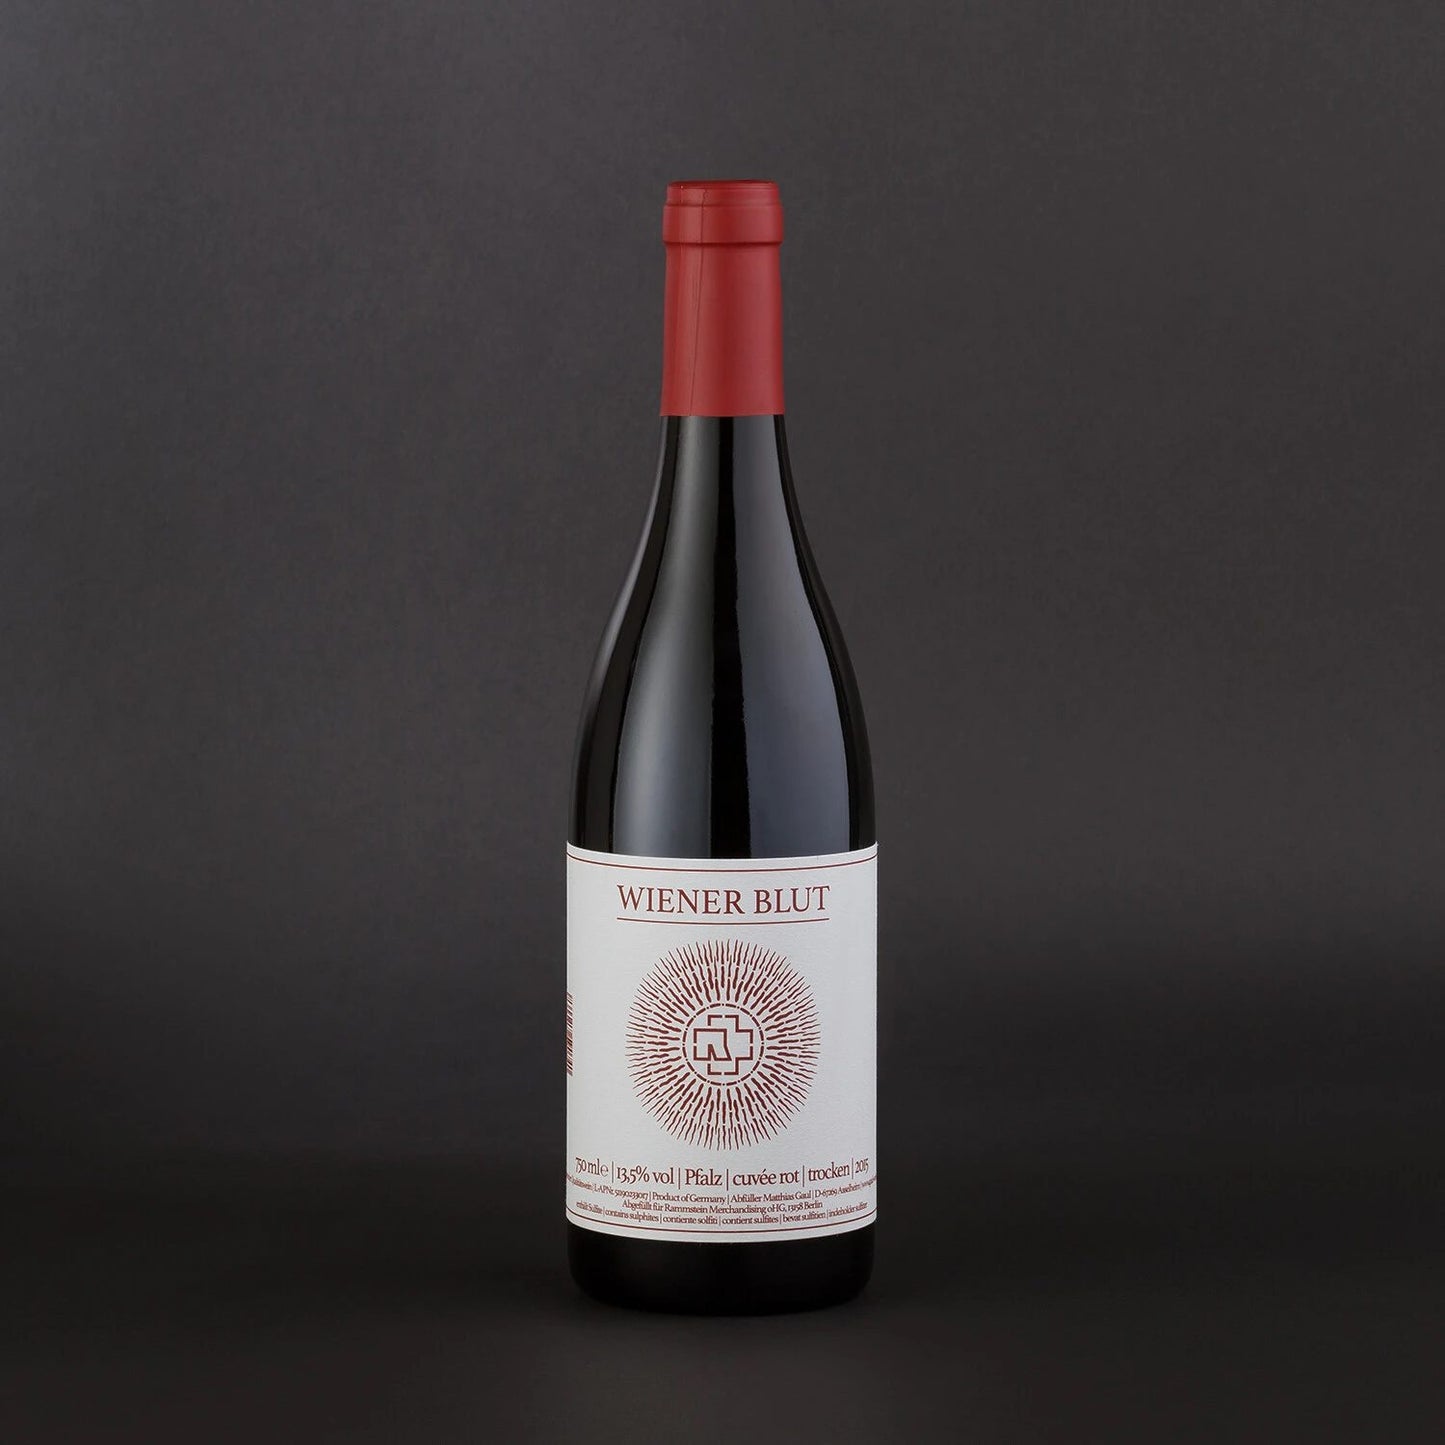 RAMMSTEIN RED WINE ”WIENER BLUT” CUVÉE 750ml (13.5%)